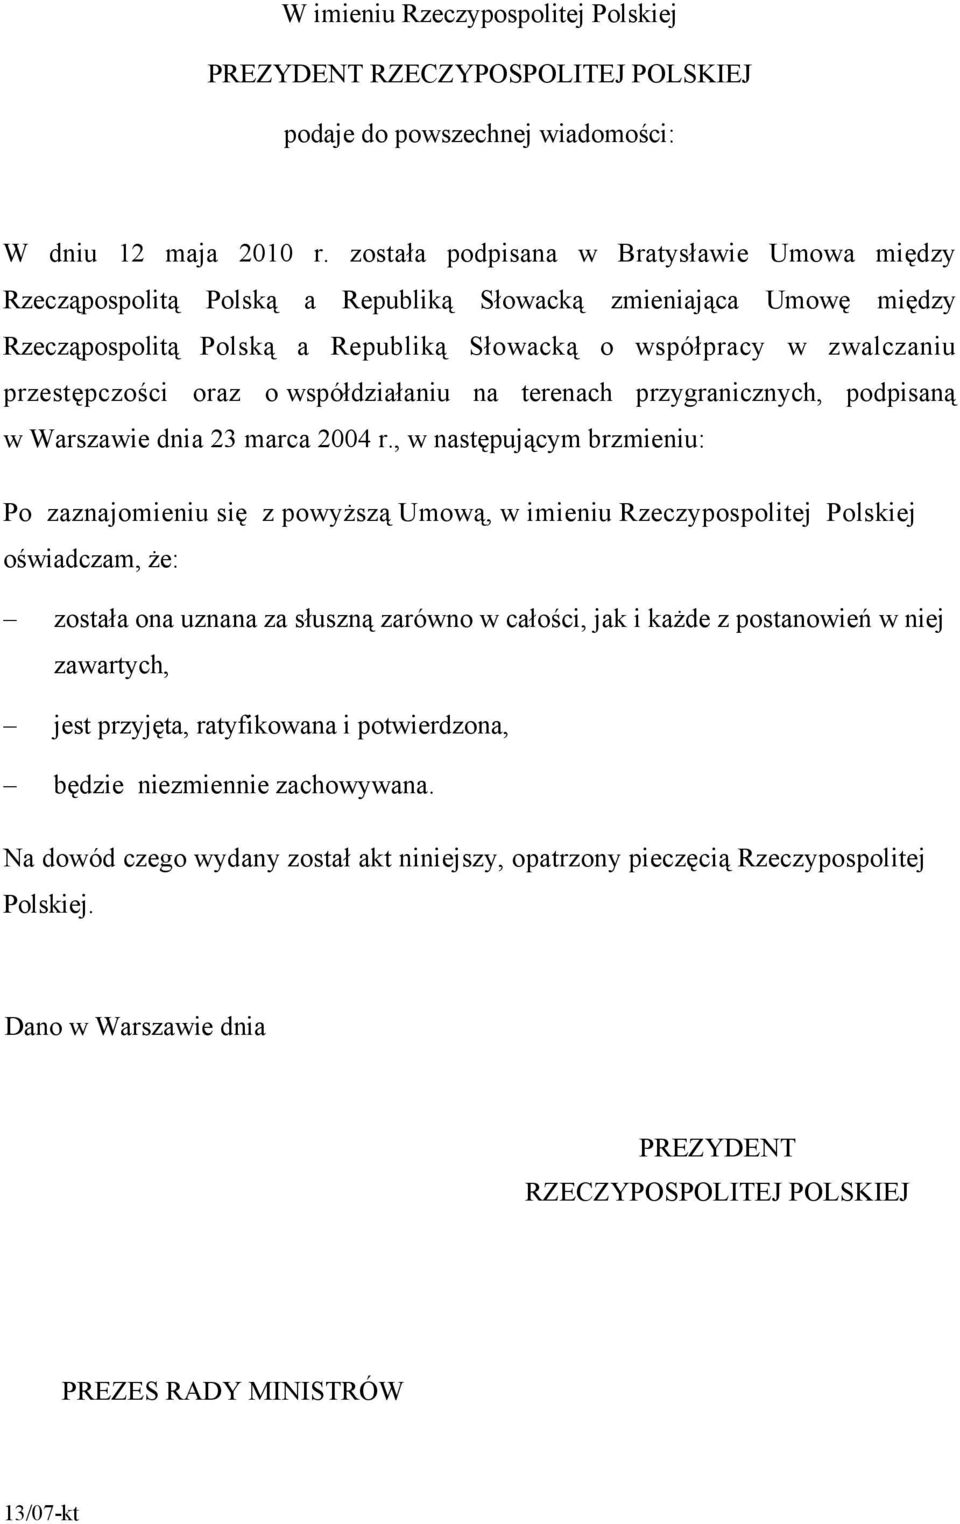 oraz o współdziałaniu na terenach przygranicznych, podpisaną w Warszawie dnia 23 marca 2004 r.